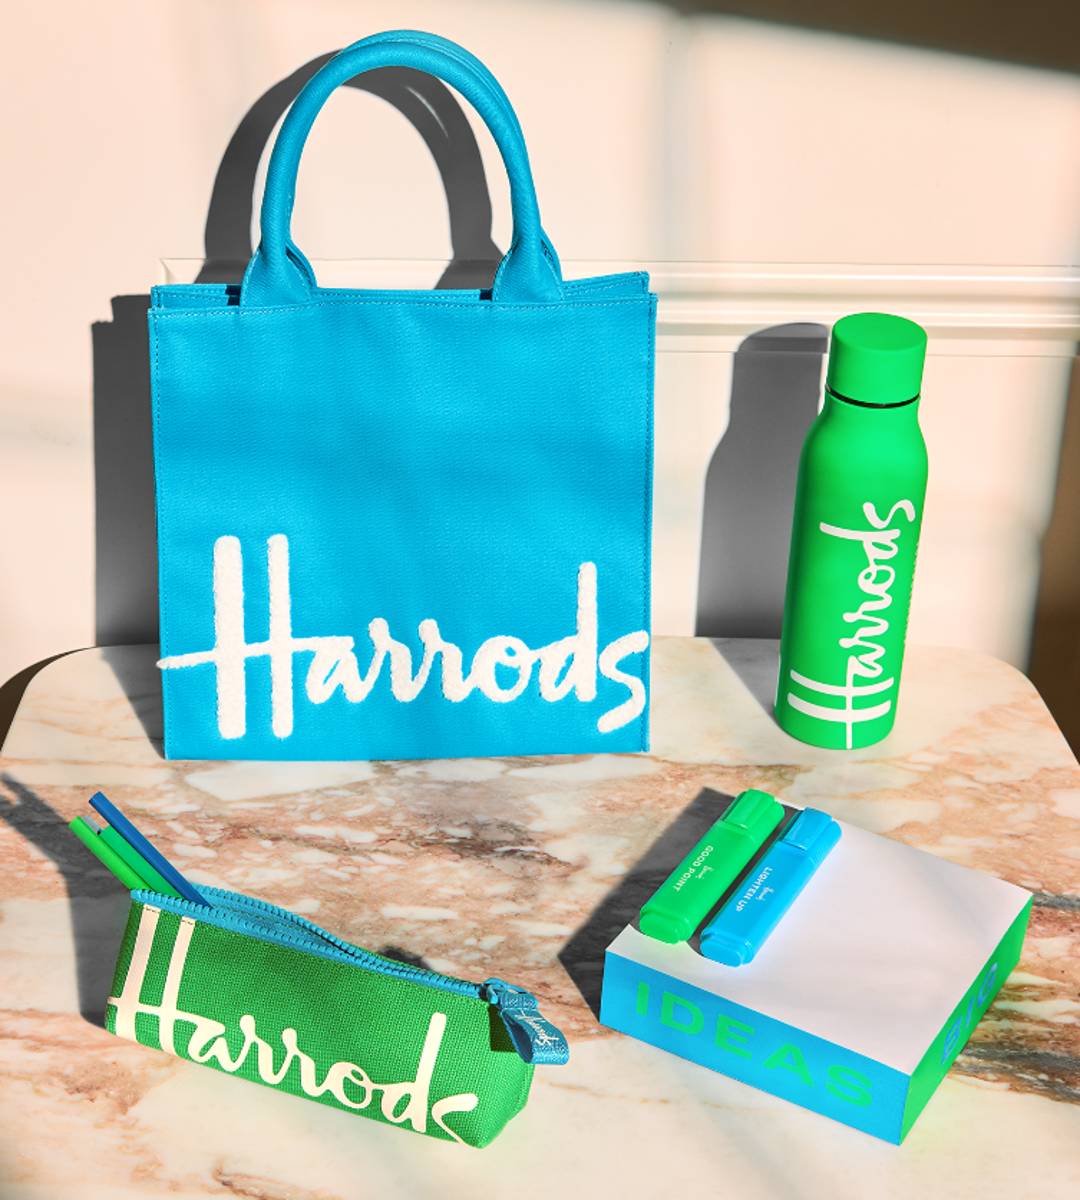 Harrods lanceert deze zomer eigen gift sets, accessoires en kantoorartikelen.